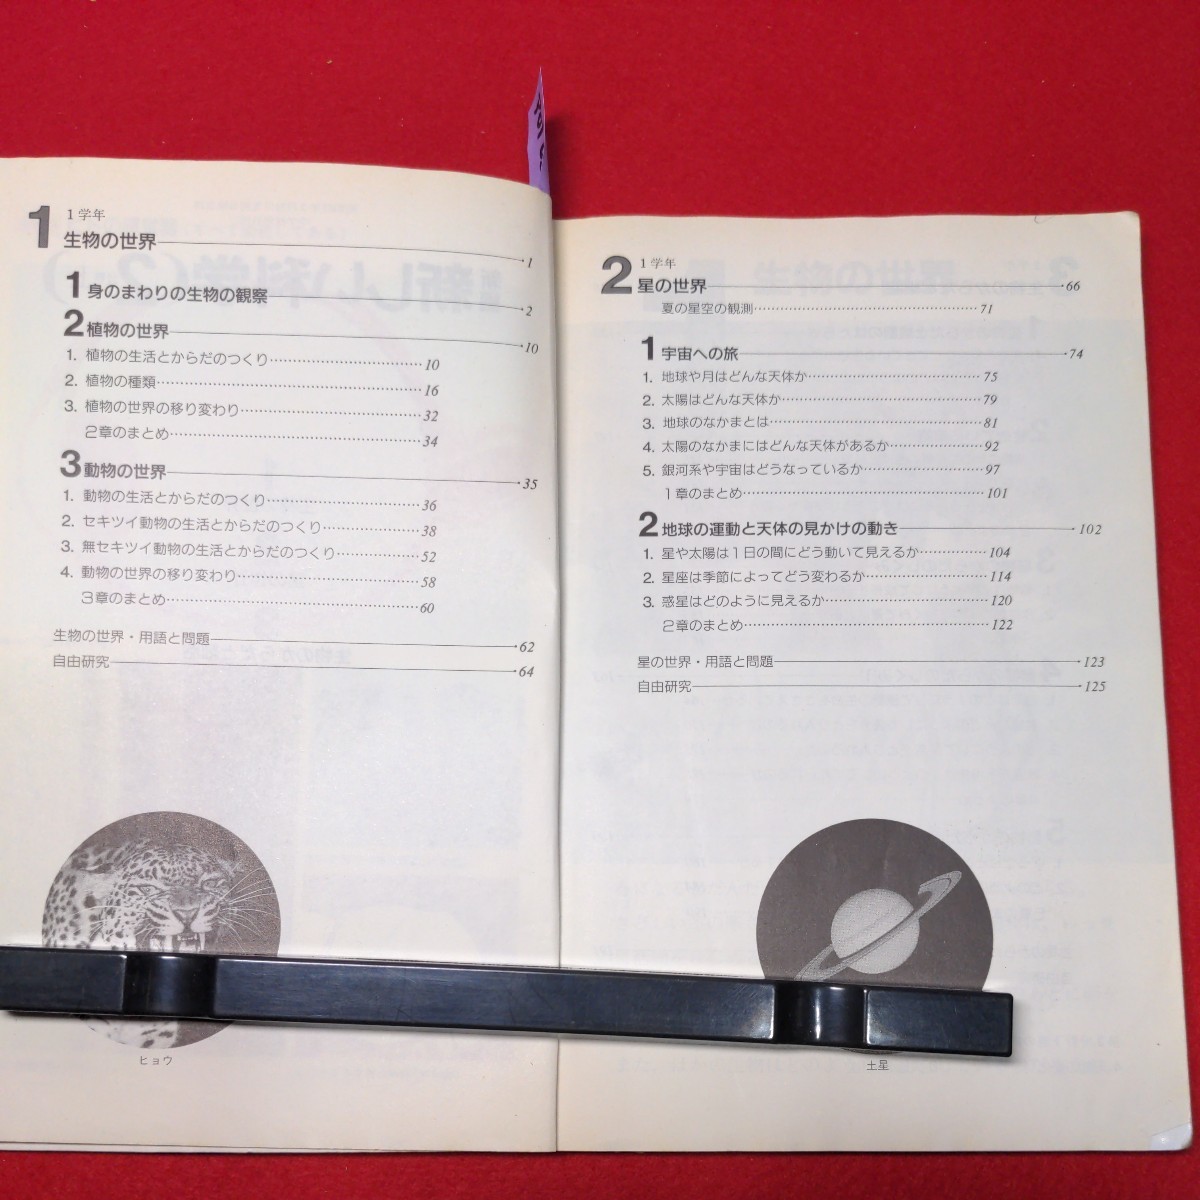 a01-025 новый сборник новый наука 2 область сверху Showa 62 год 1 месяц 20 день печать Showa 62 год 2 месяц 10 день выпуск выпуск место Tokyo литература акционерное общество 